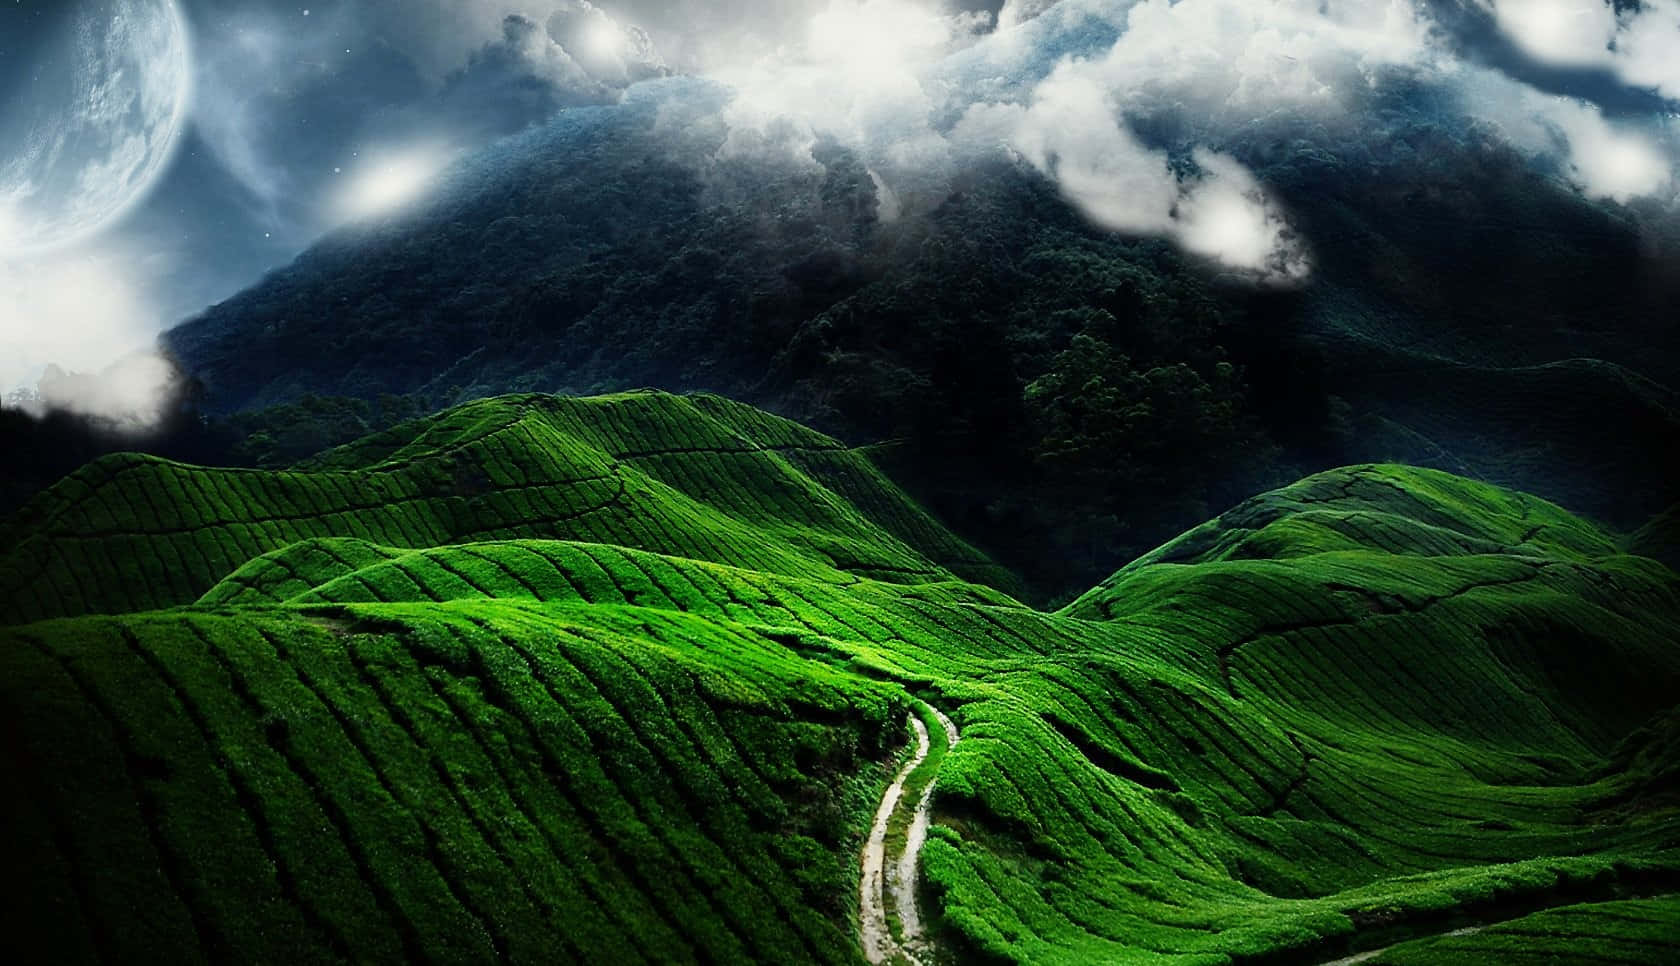 Winding Roads In Between Green Hills Wallpaper